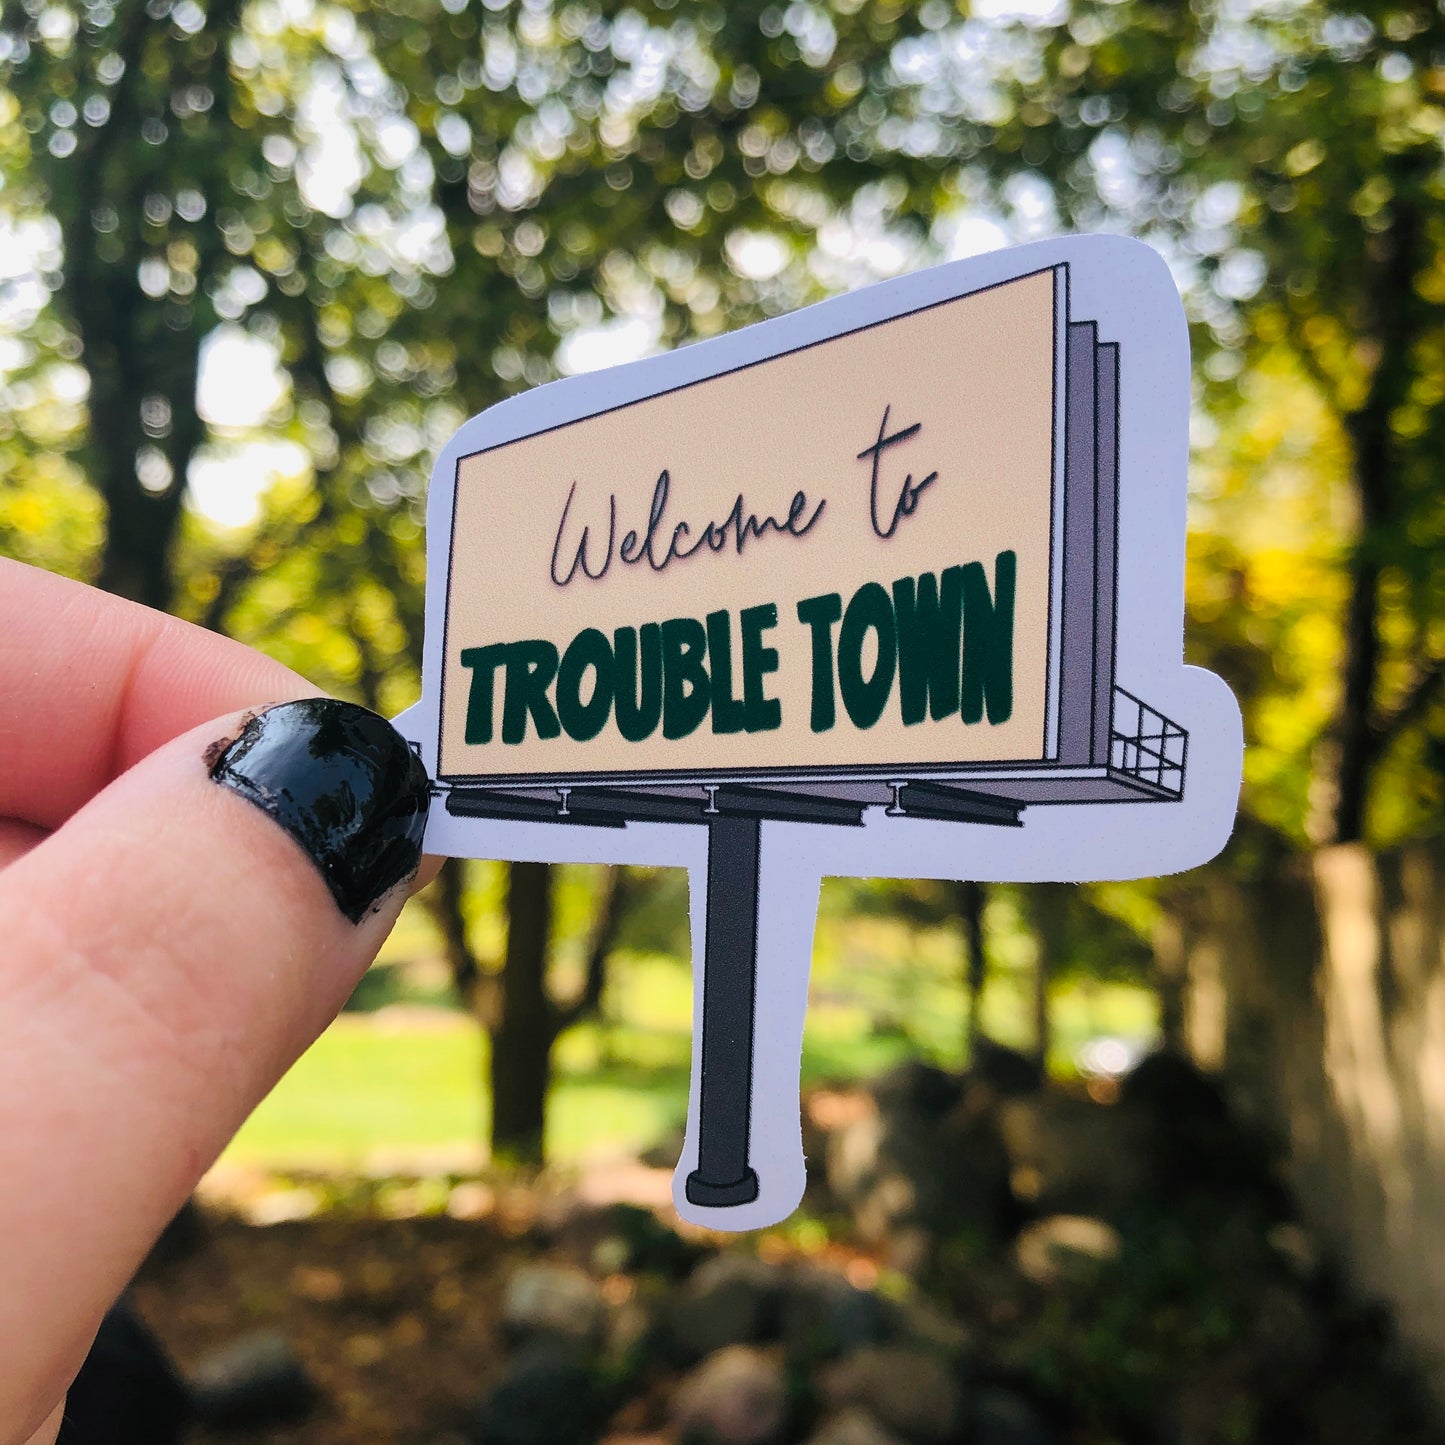 Jordan Davis "Welcome to Trouble Town" Billboard Sticker